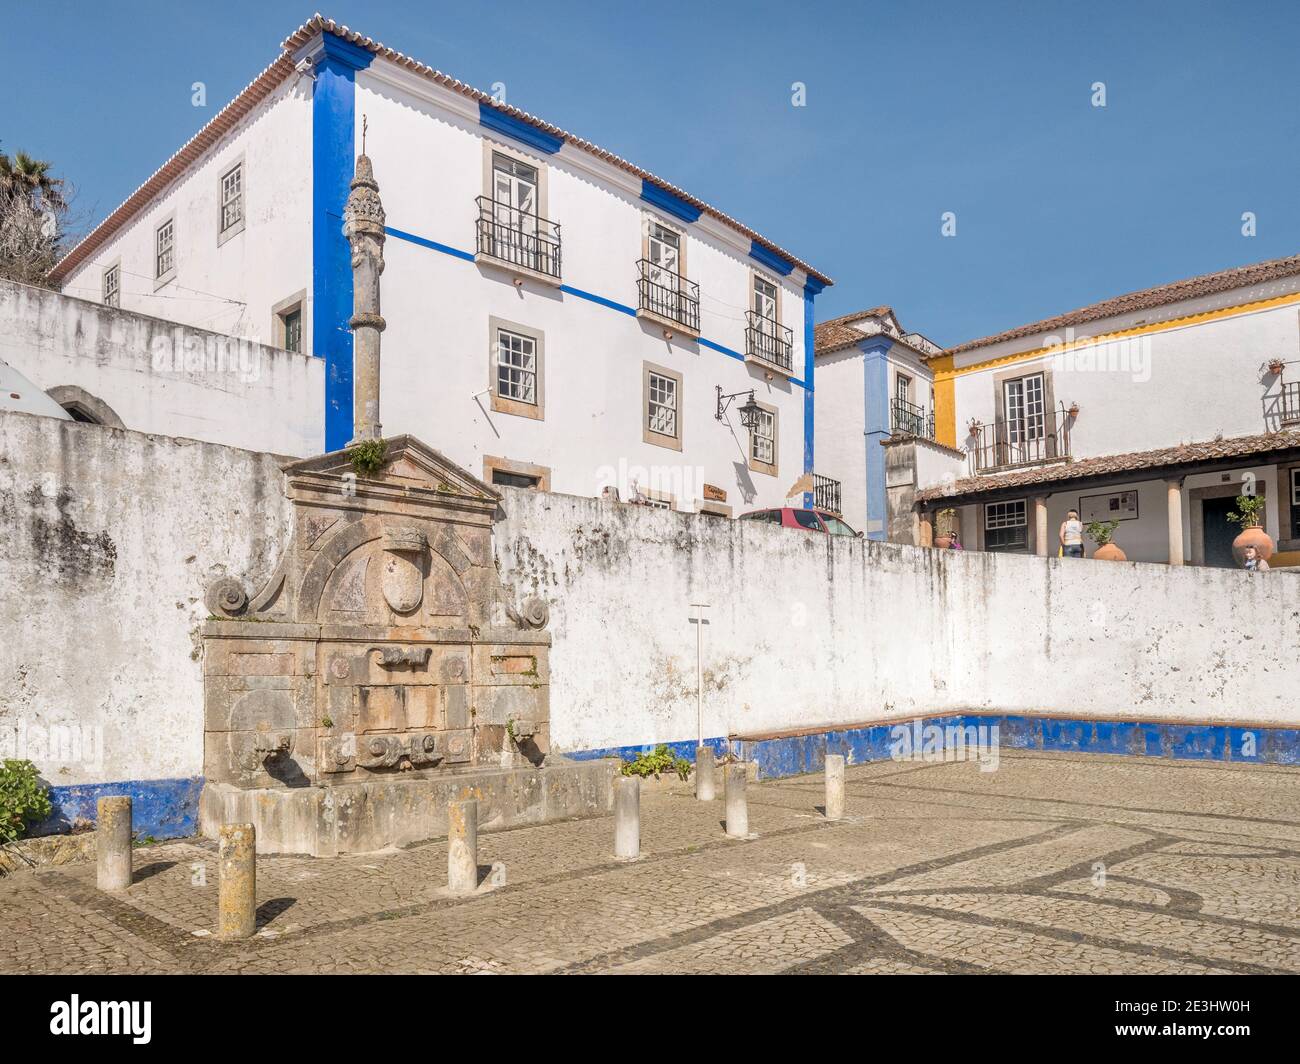 11 marzo 2020: Obidos, Portogallo - la piazza principale della città murata di Obidos, con il Pelourinho o pilastro sulla sinistra. Foto Stock